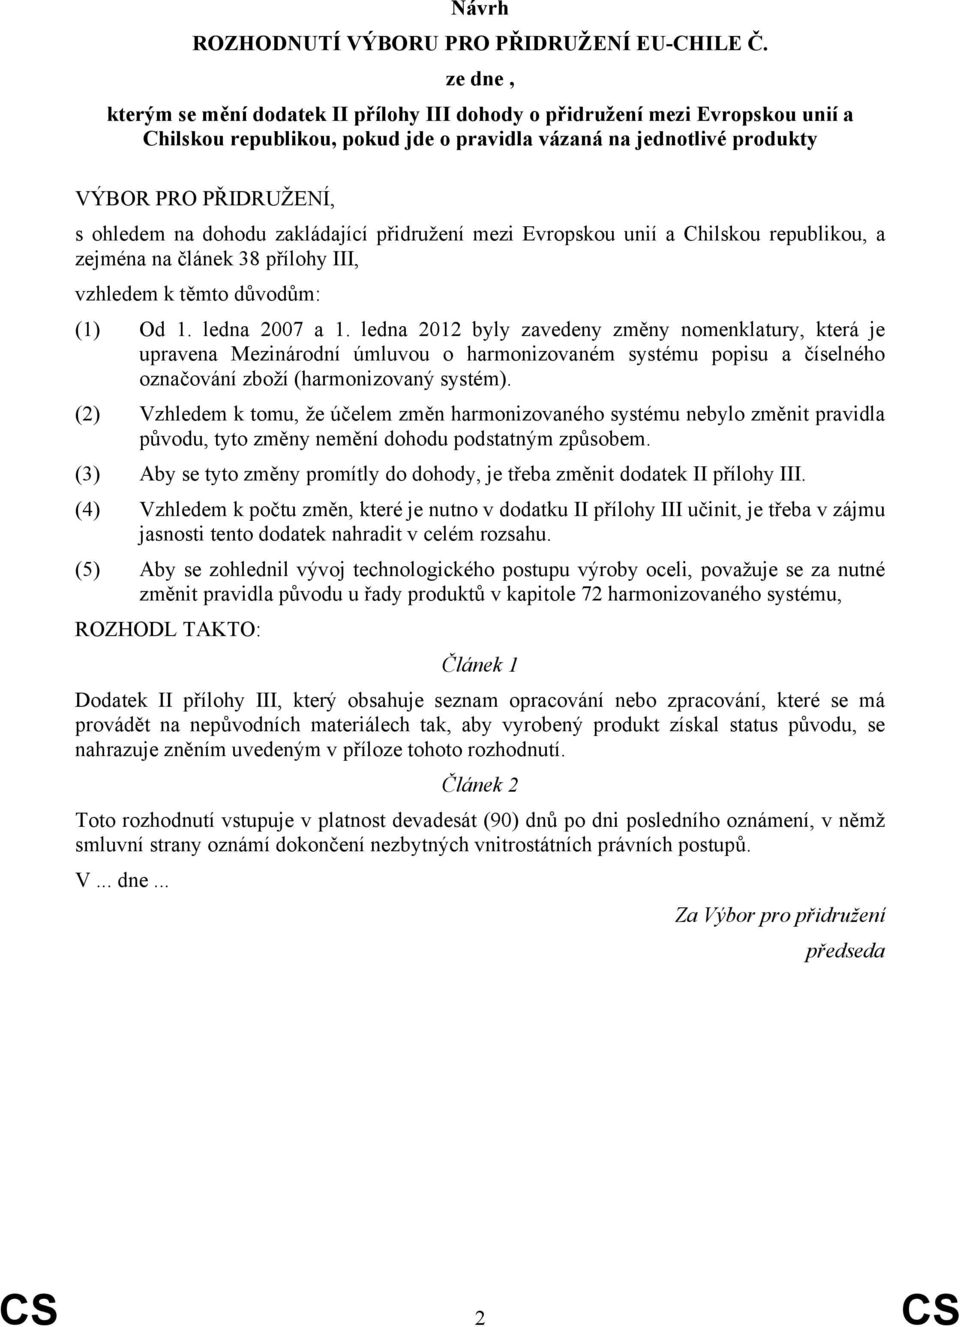 dohodu zakládající přidružení mezi Evropskou unií a Chilskou republikou, a zejména na článek 38 přílohy III, vzhledem k těmto důvodům: (1) Od 1. ledna 2007 a 1.